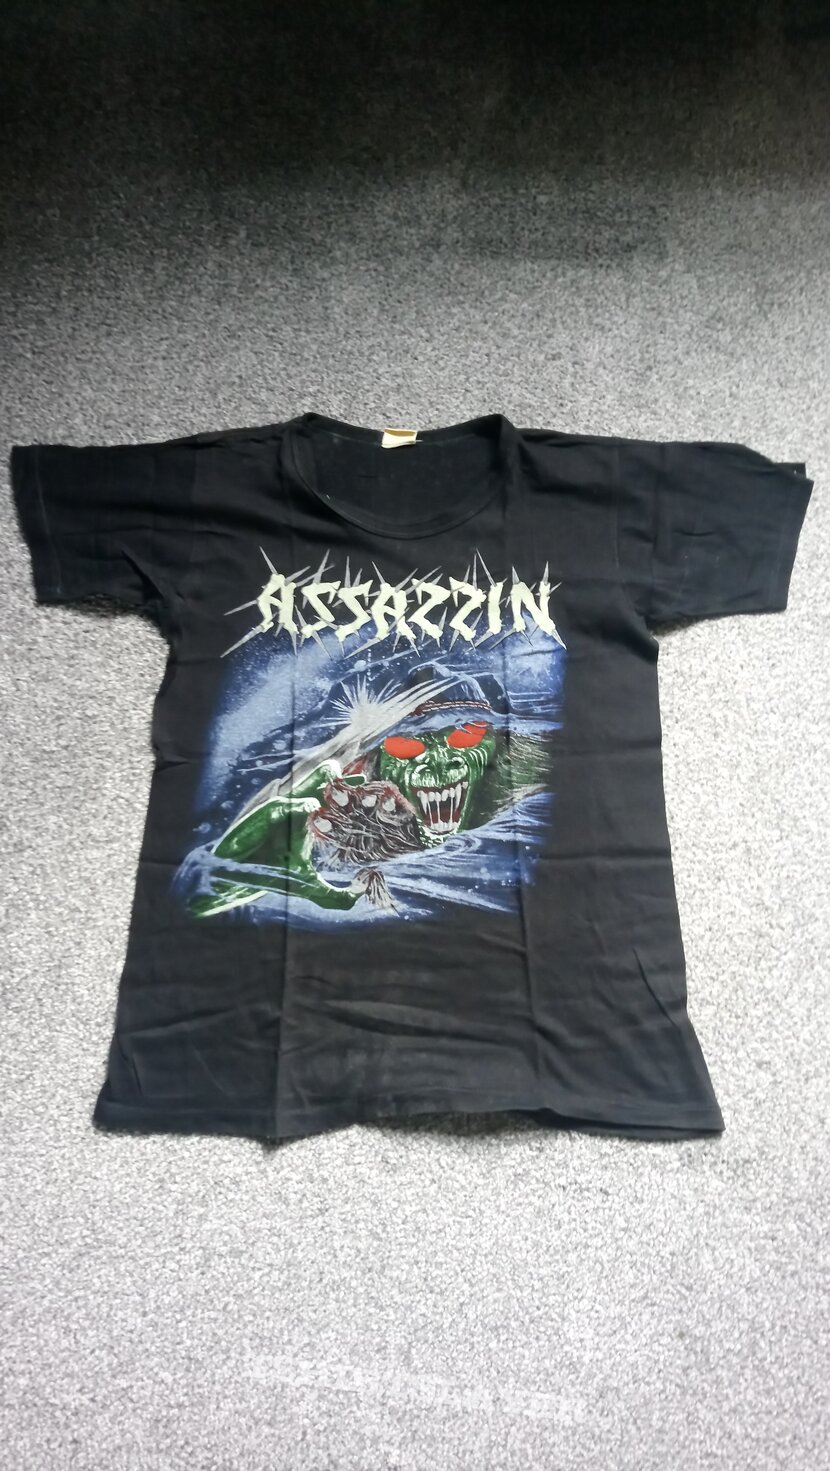 Assassin - Interstellar Experience Shirt